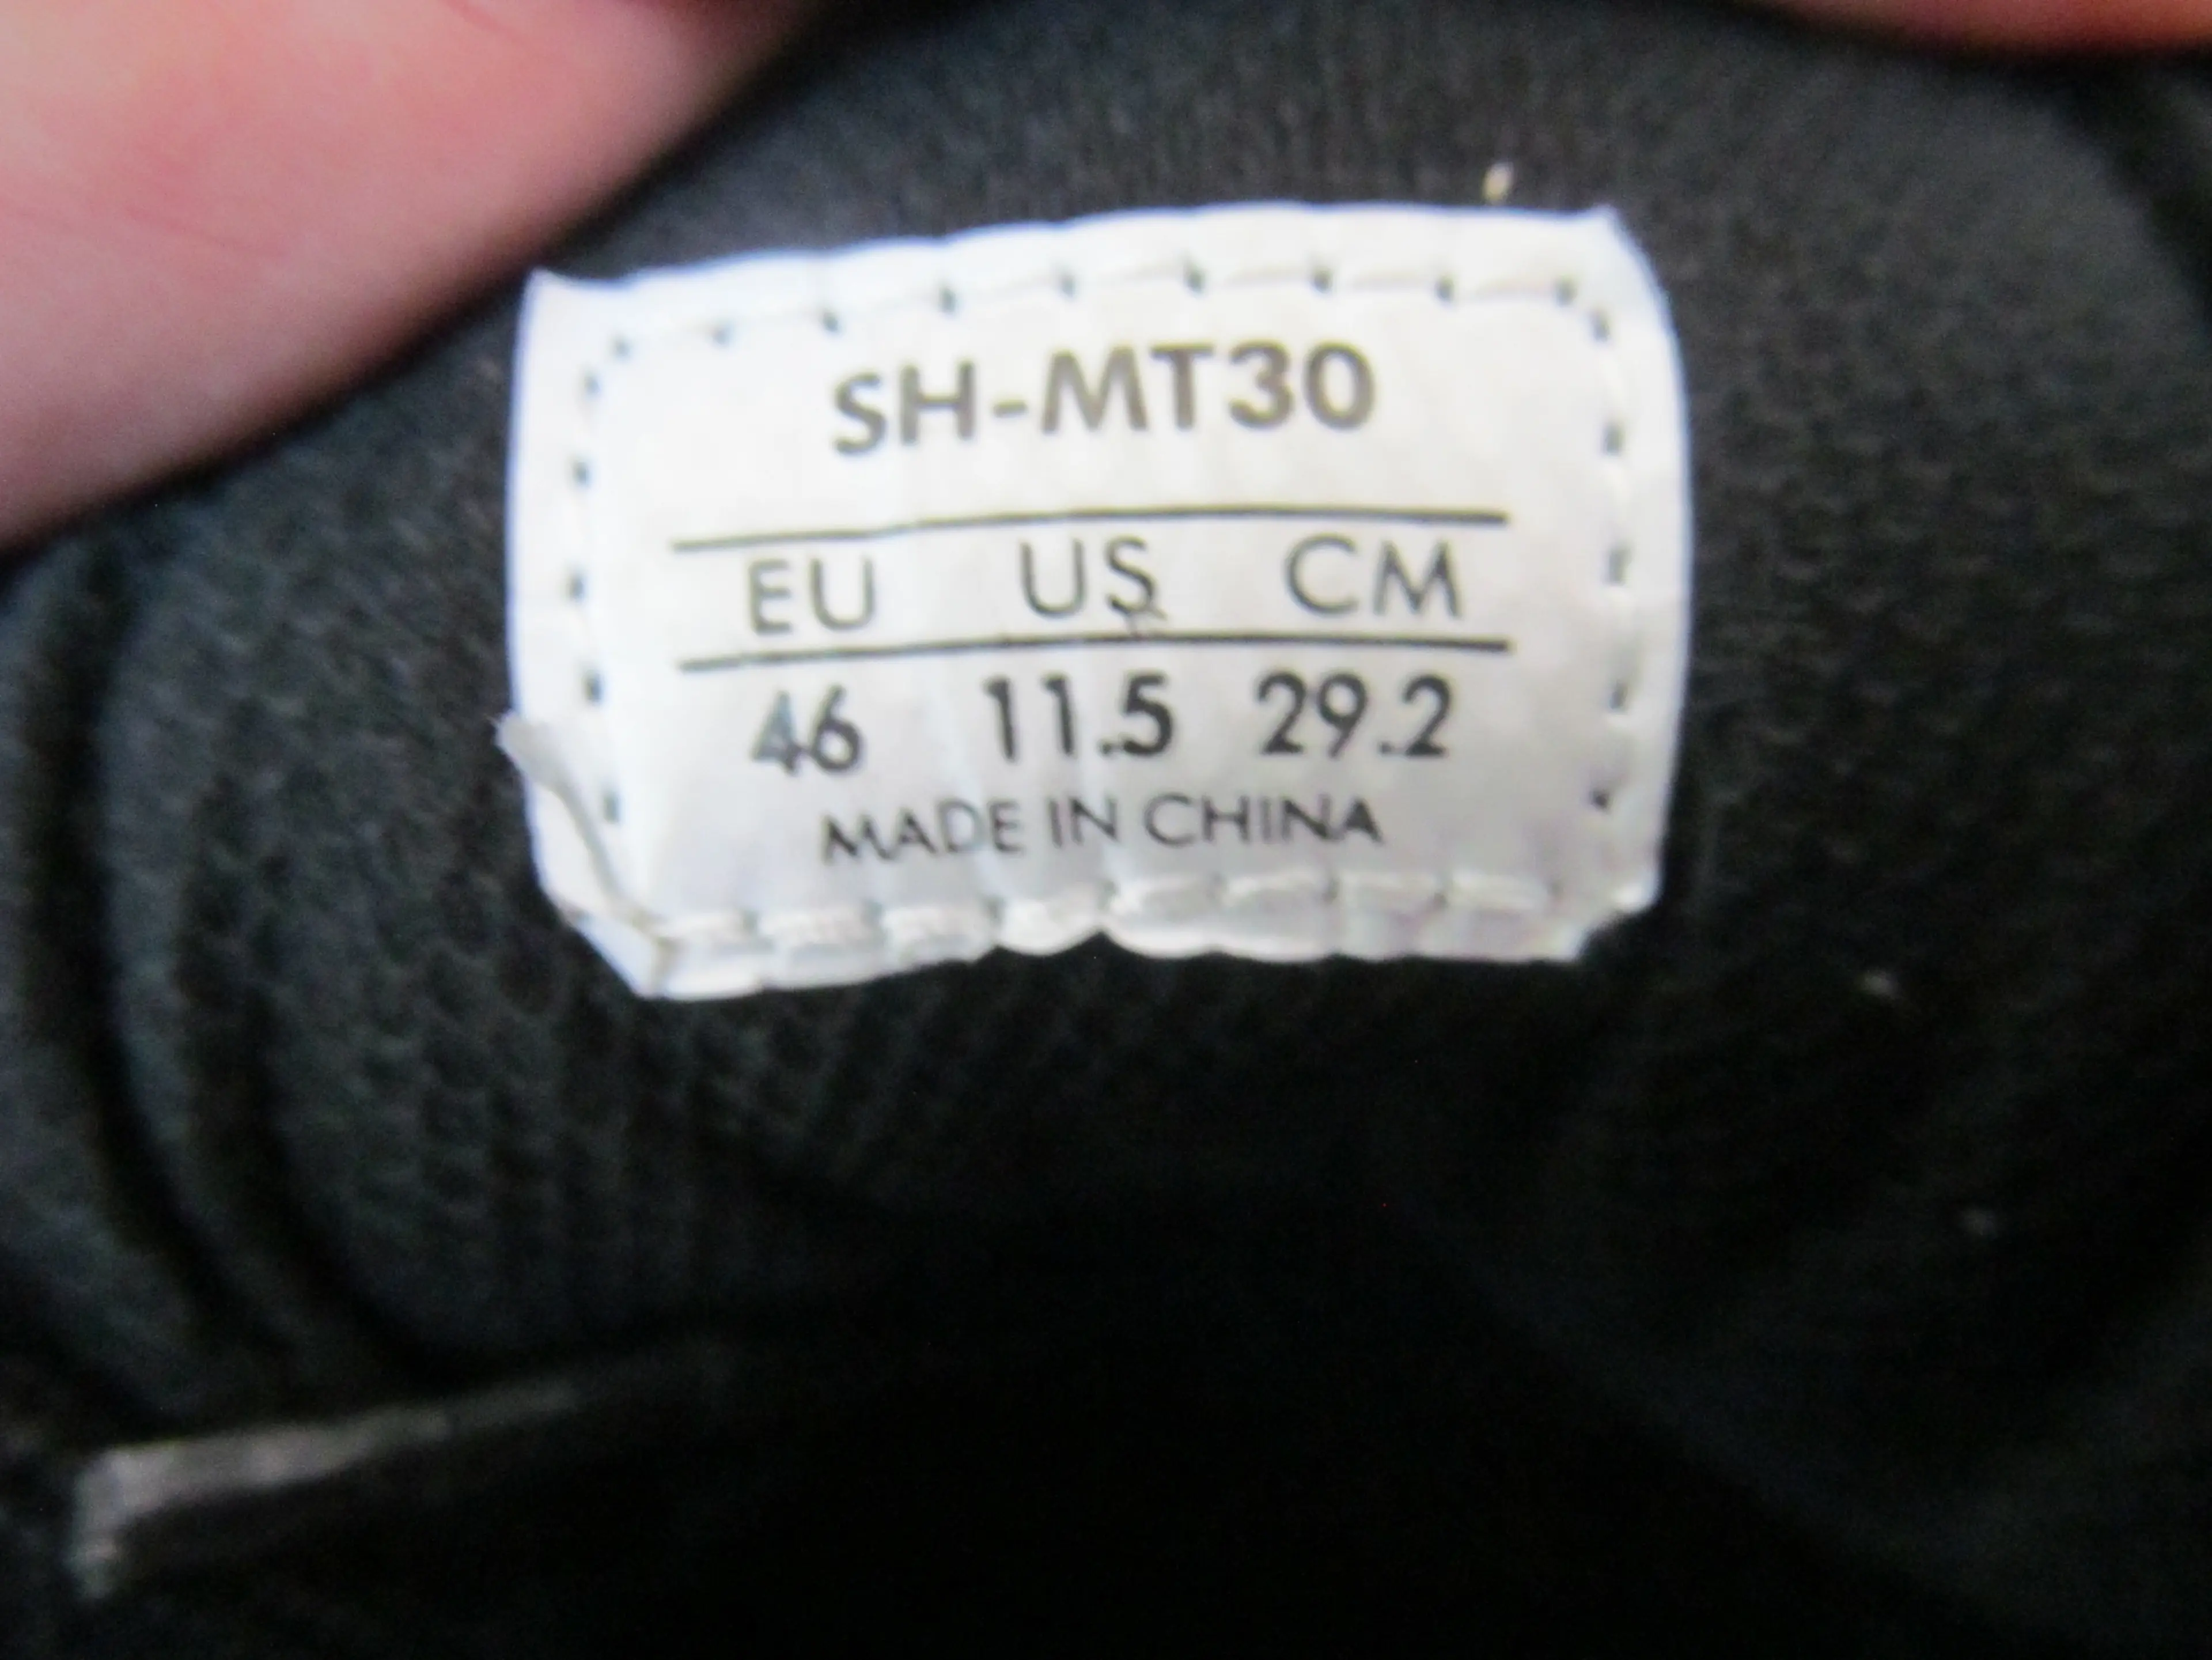 3. Pantofi Shimano SH_MT30 nr 46, 29.2 cm